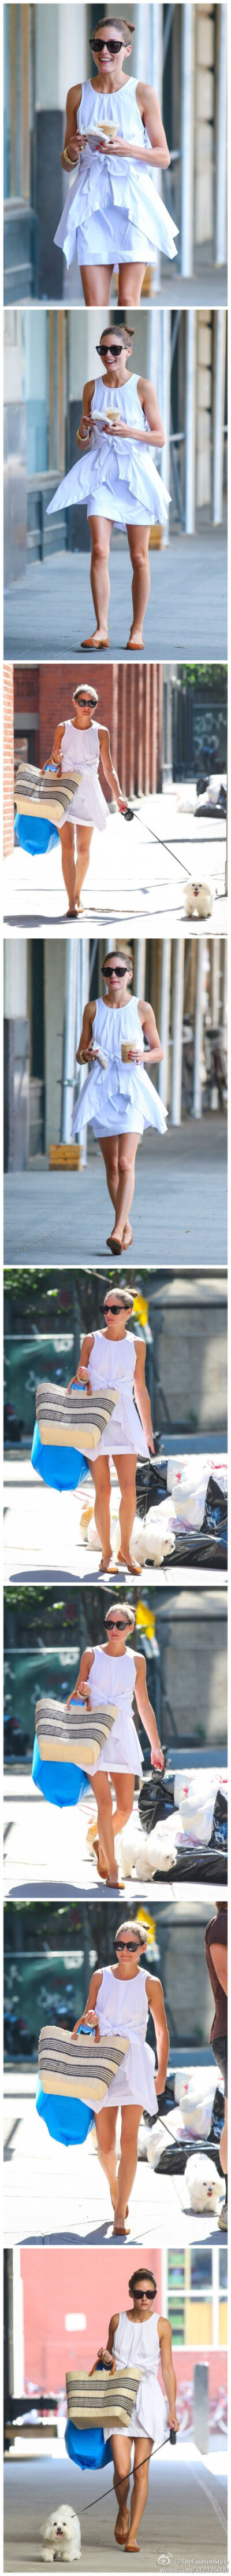 #名媛街拍#—— #Olivia Palermo# stops for an iced coffee after walking her dog in New York City, New York。 2013.07.16 HQ（#高清组图#）